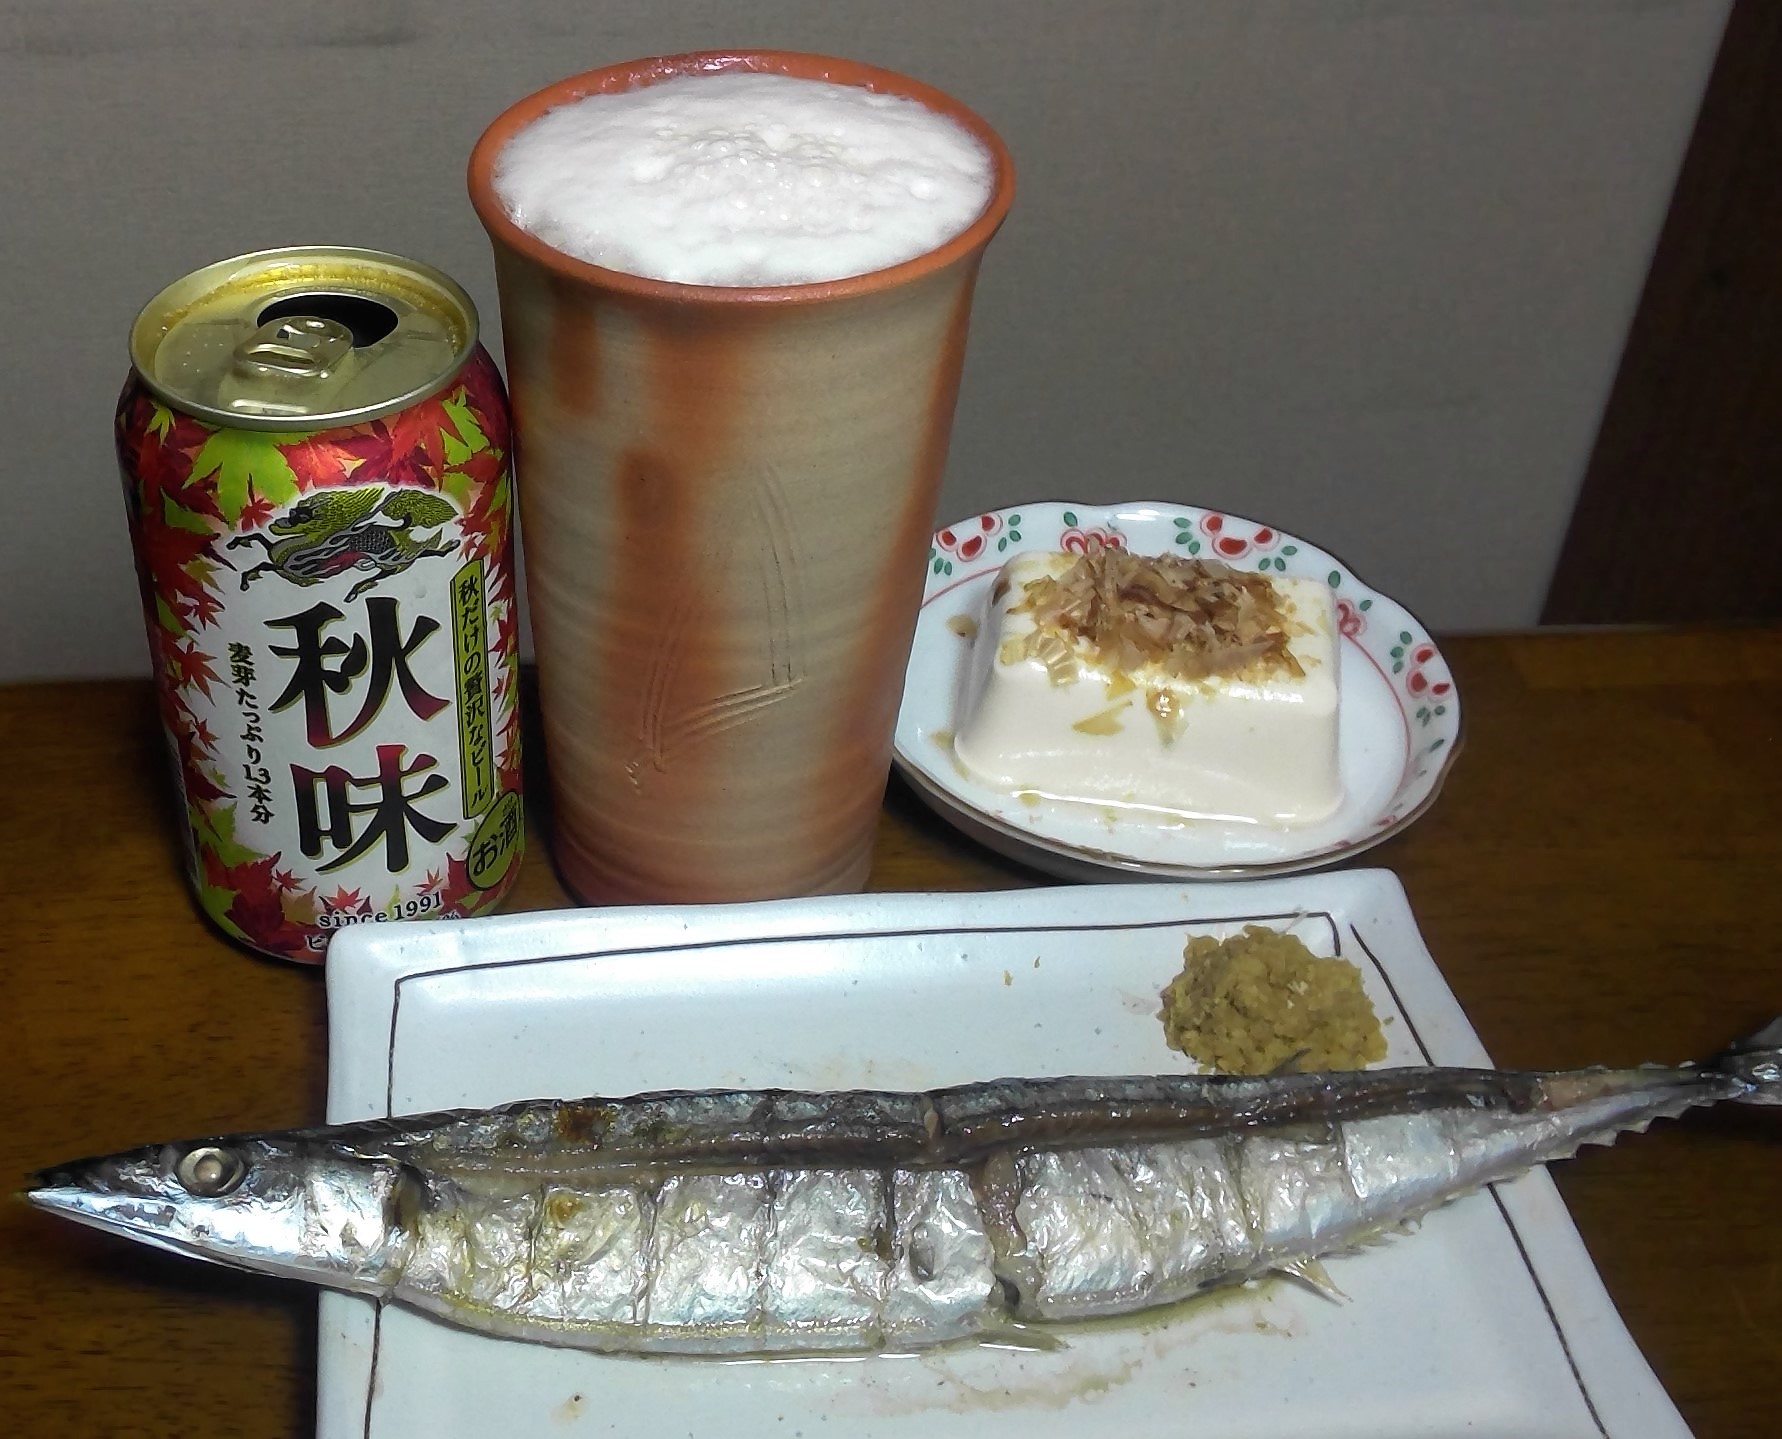 小ぶりだけど、生秋刀魚が105円だったので買いました。 秋刀魚に